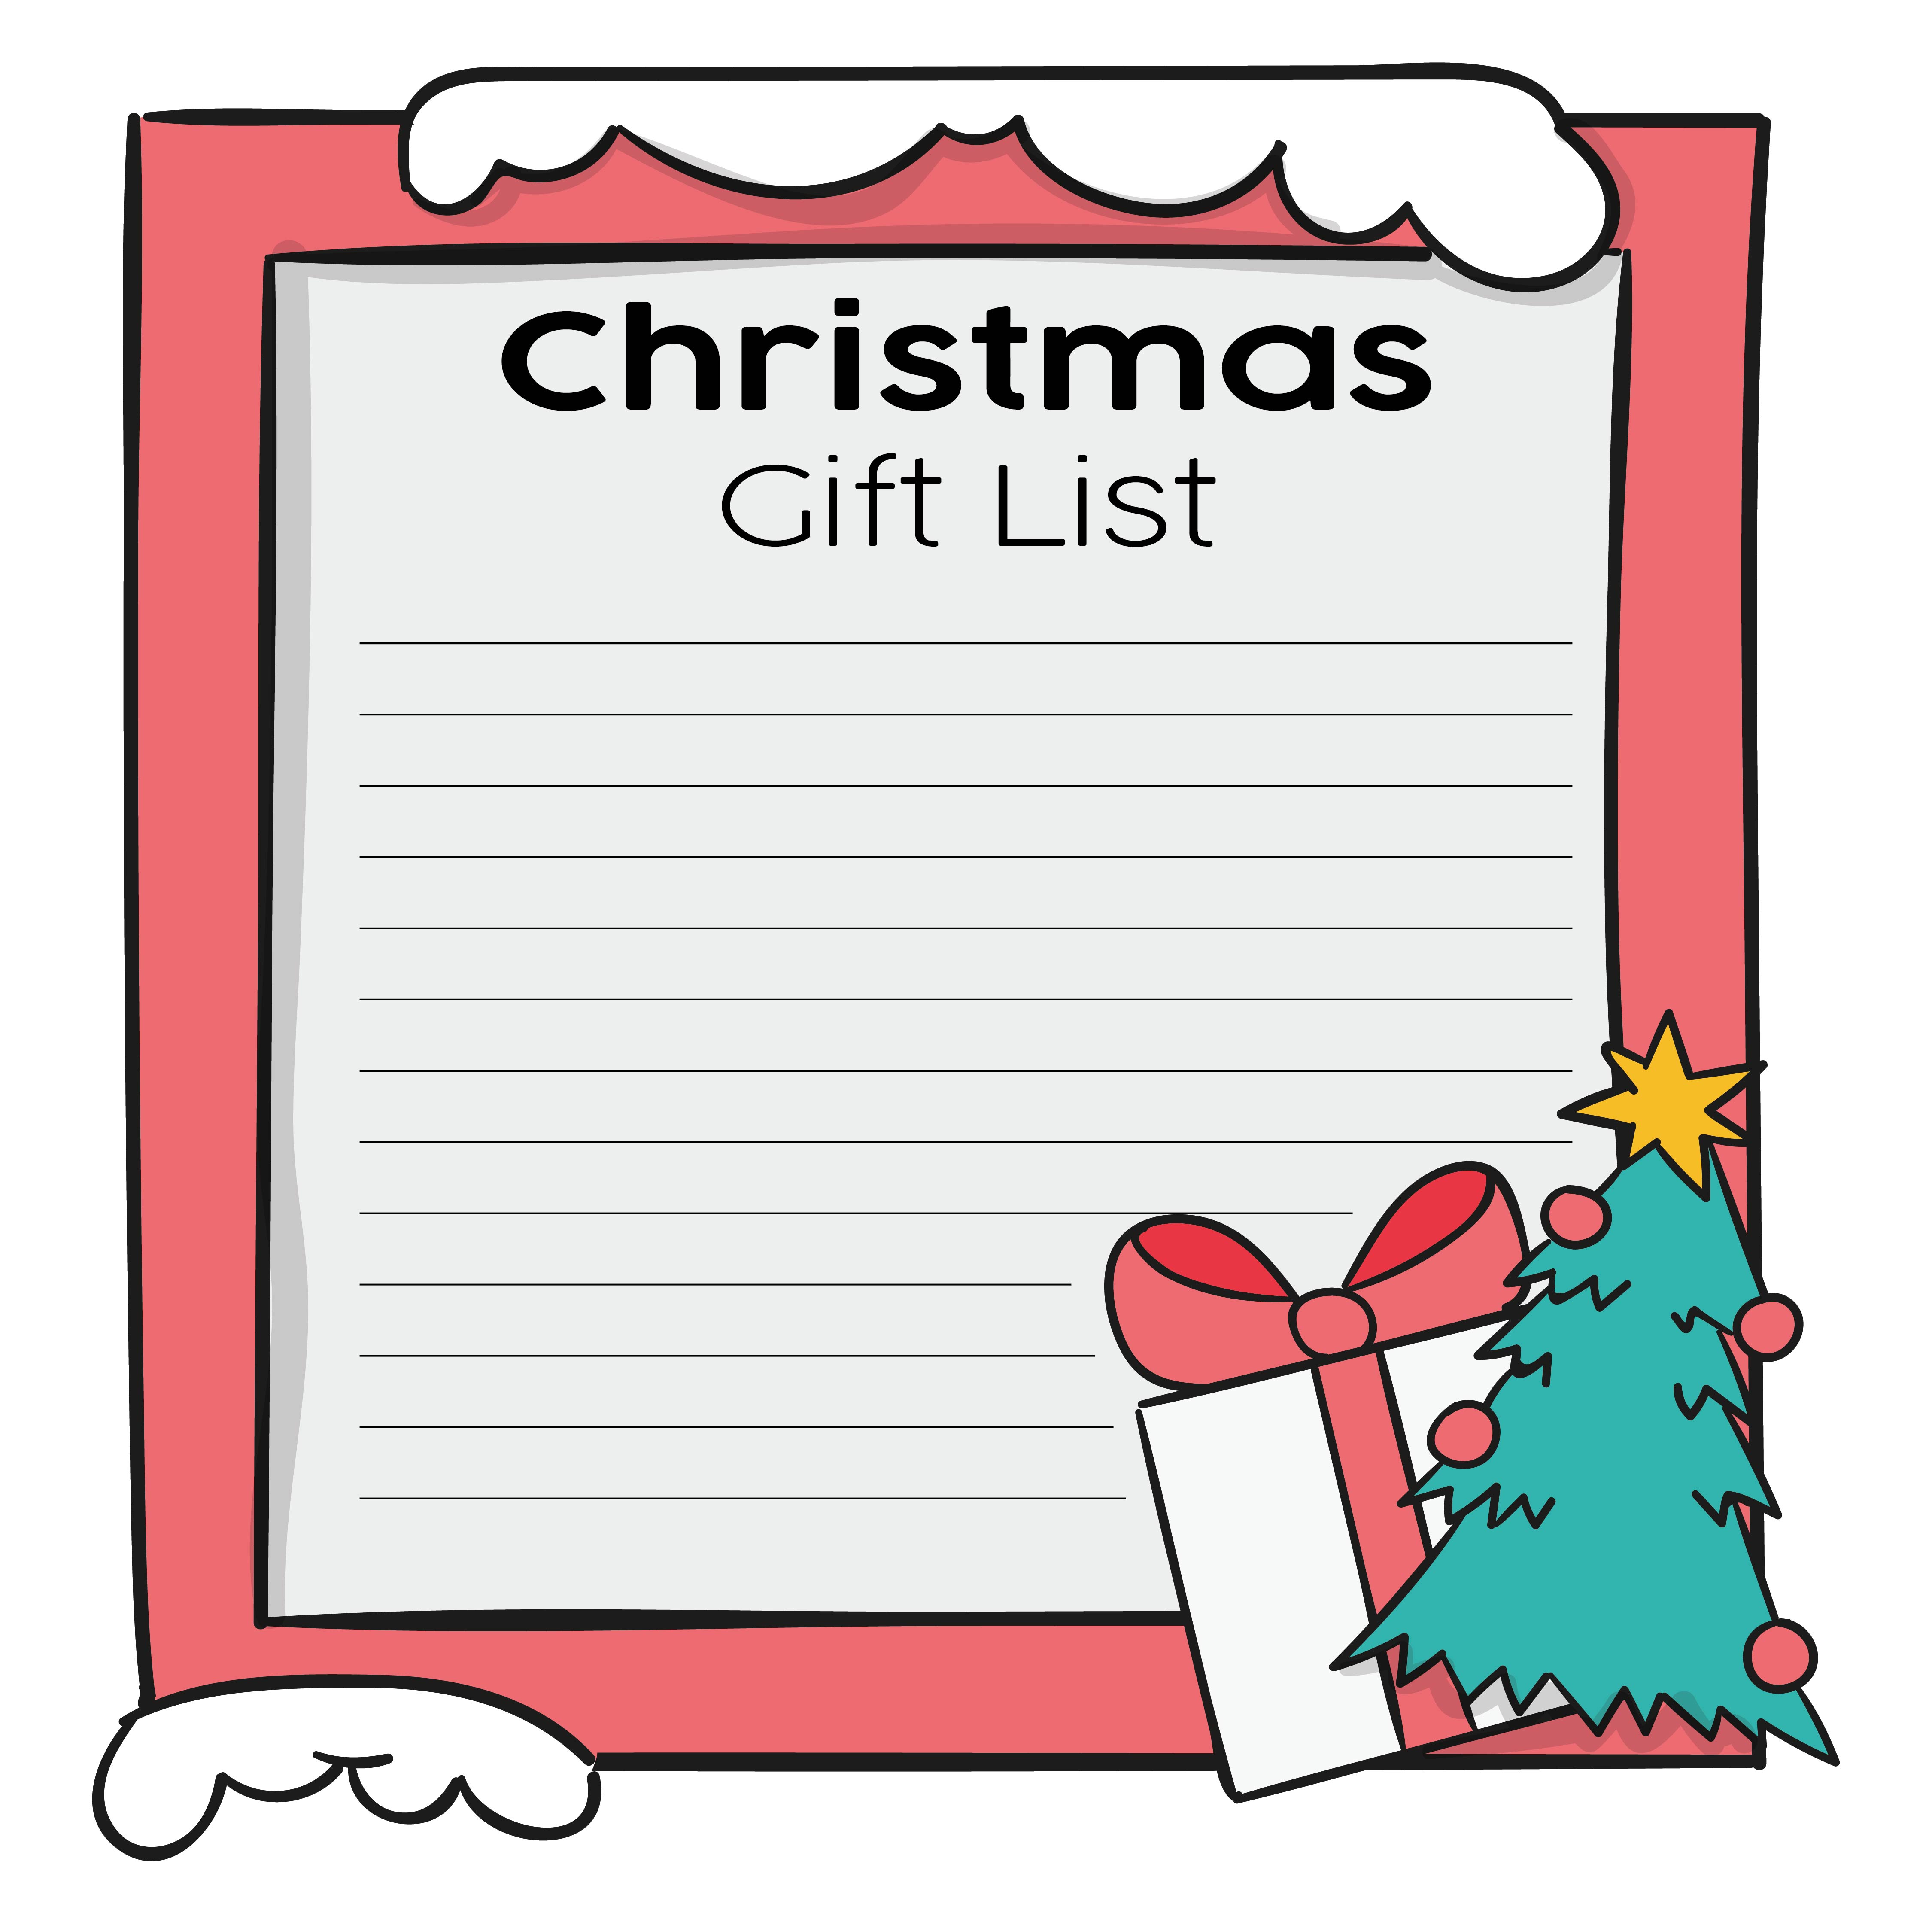 Blank Christmas Wish List Printable